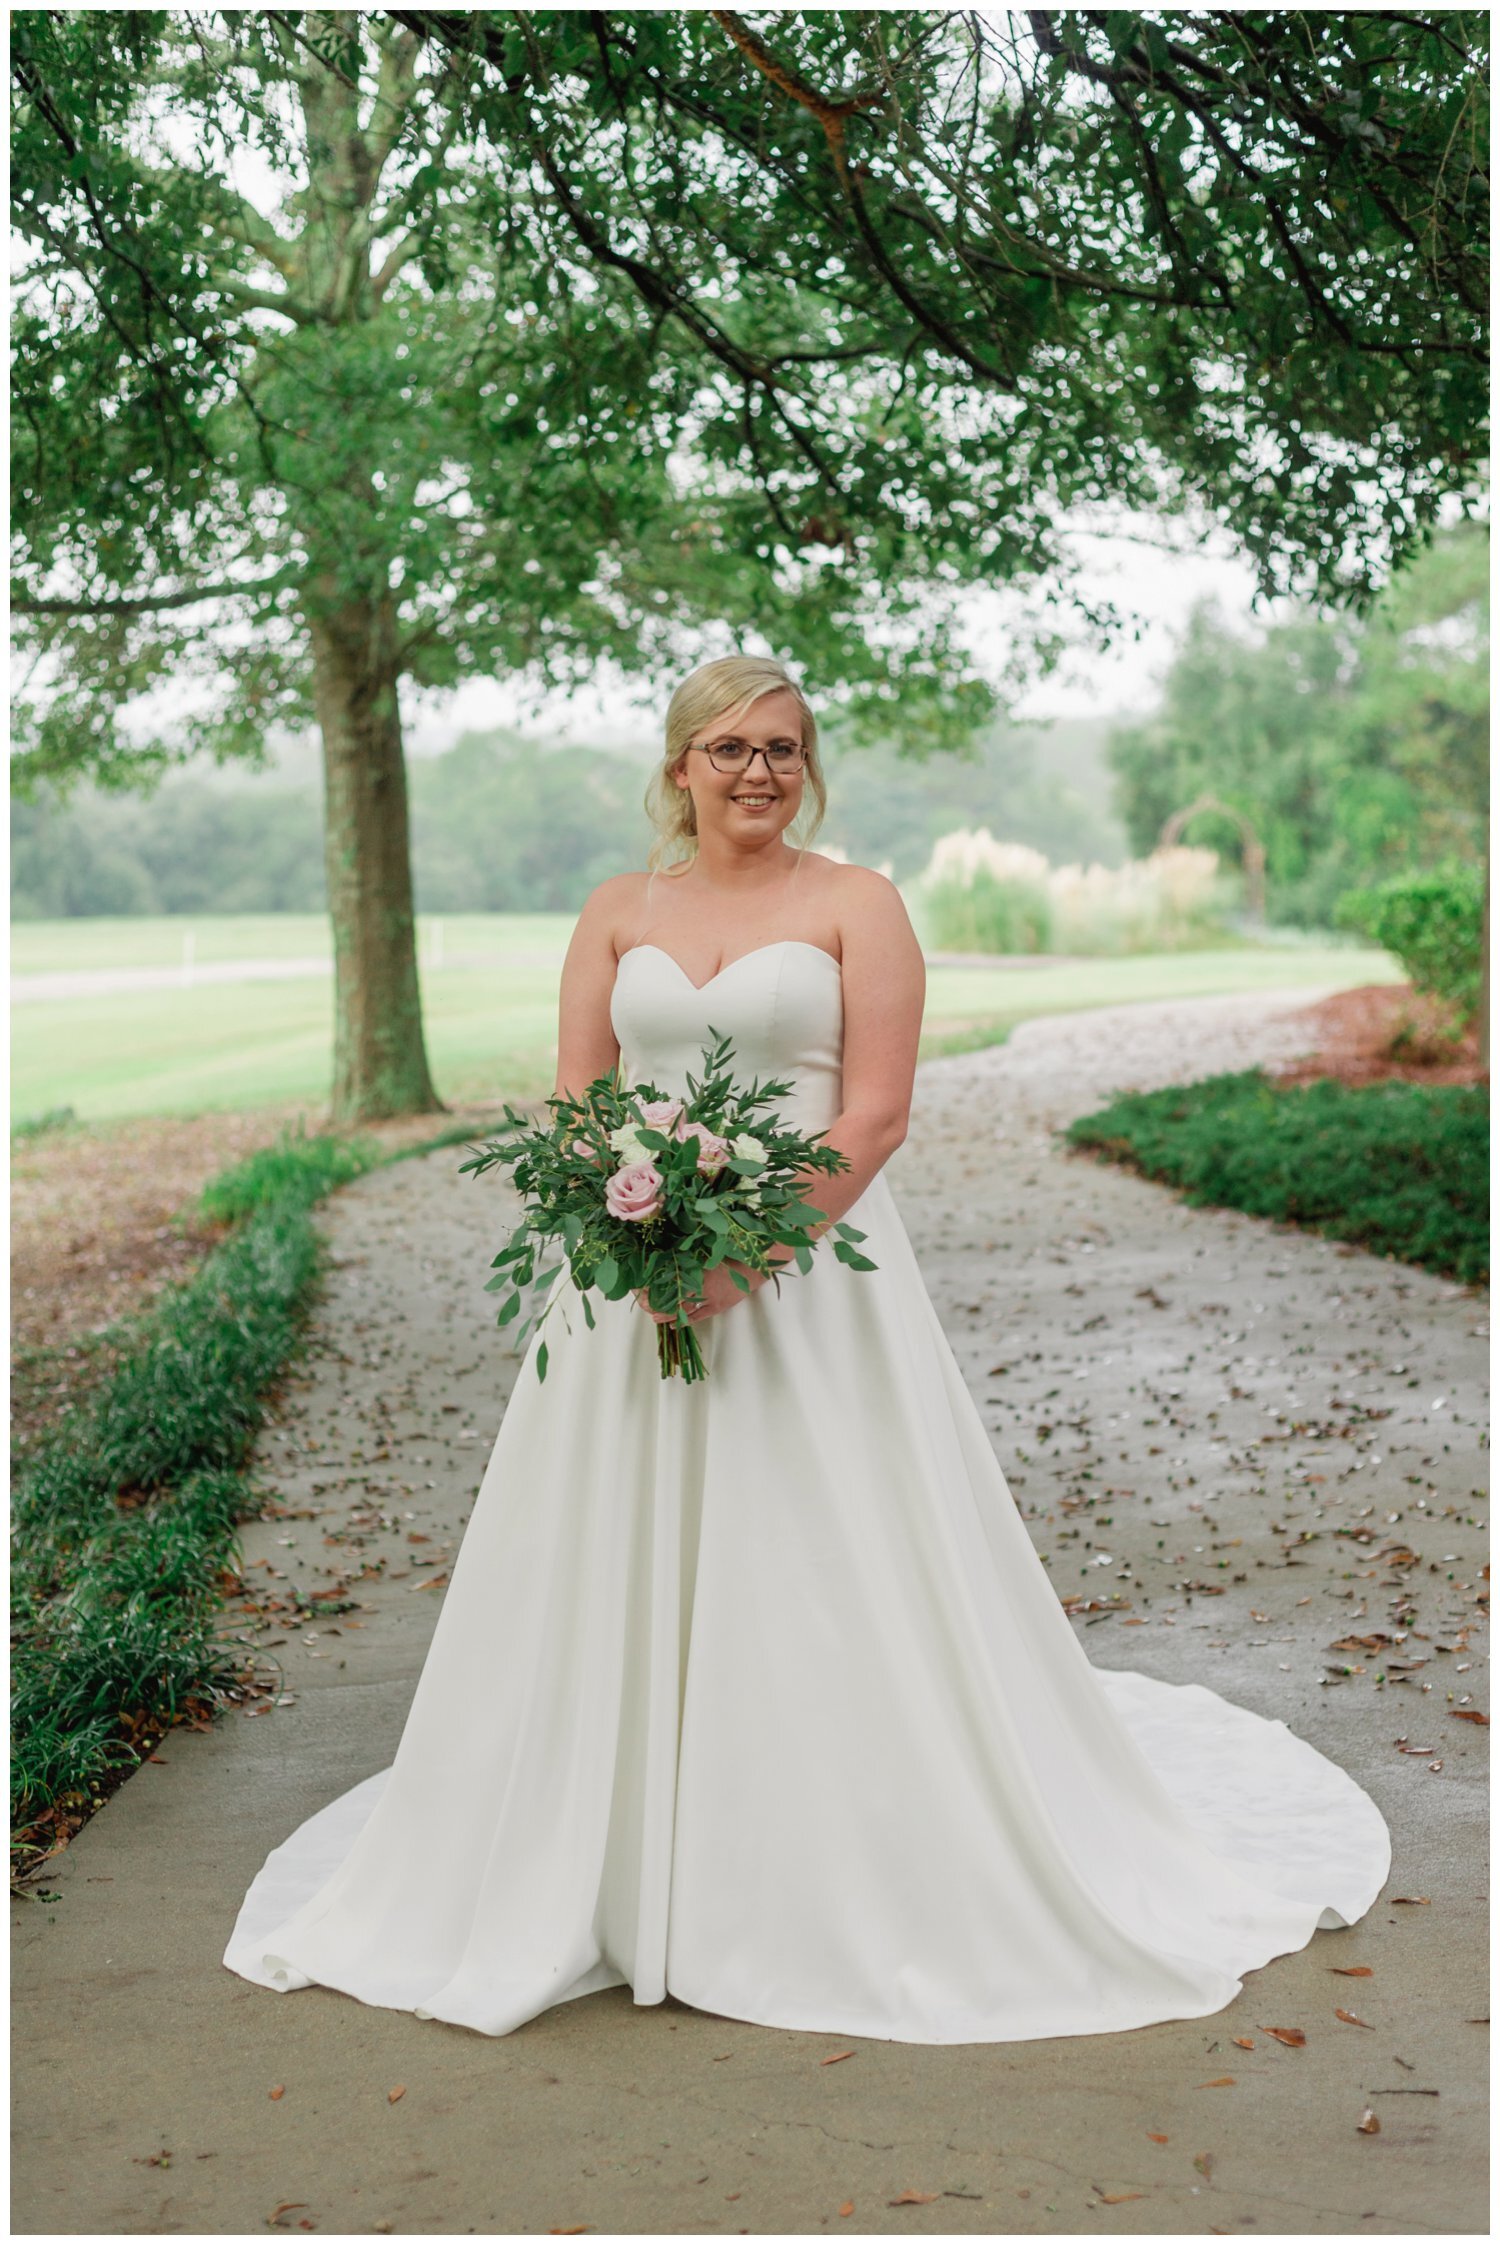 Meet the Bride | Jennifer | San Souci Farms, Sumter, SC | Bridal ...